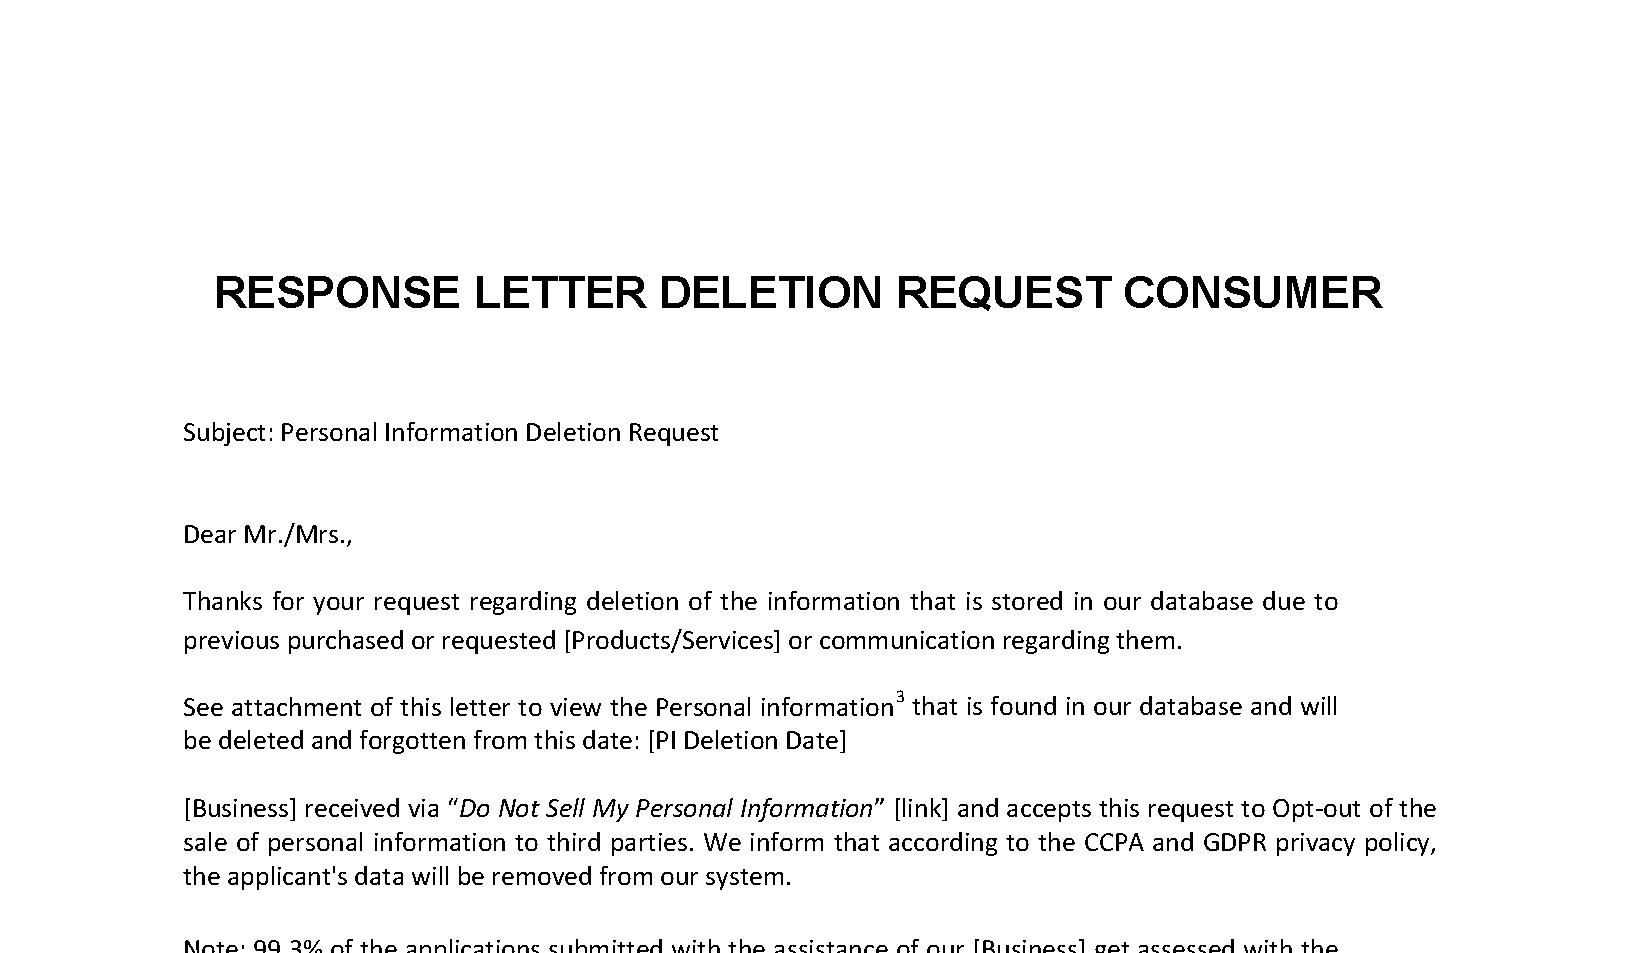 ccpa response letter deletion request plantilla imagen principal